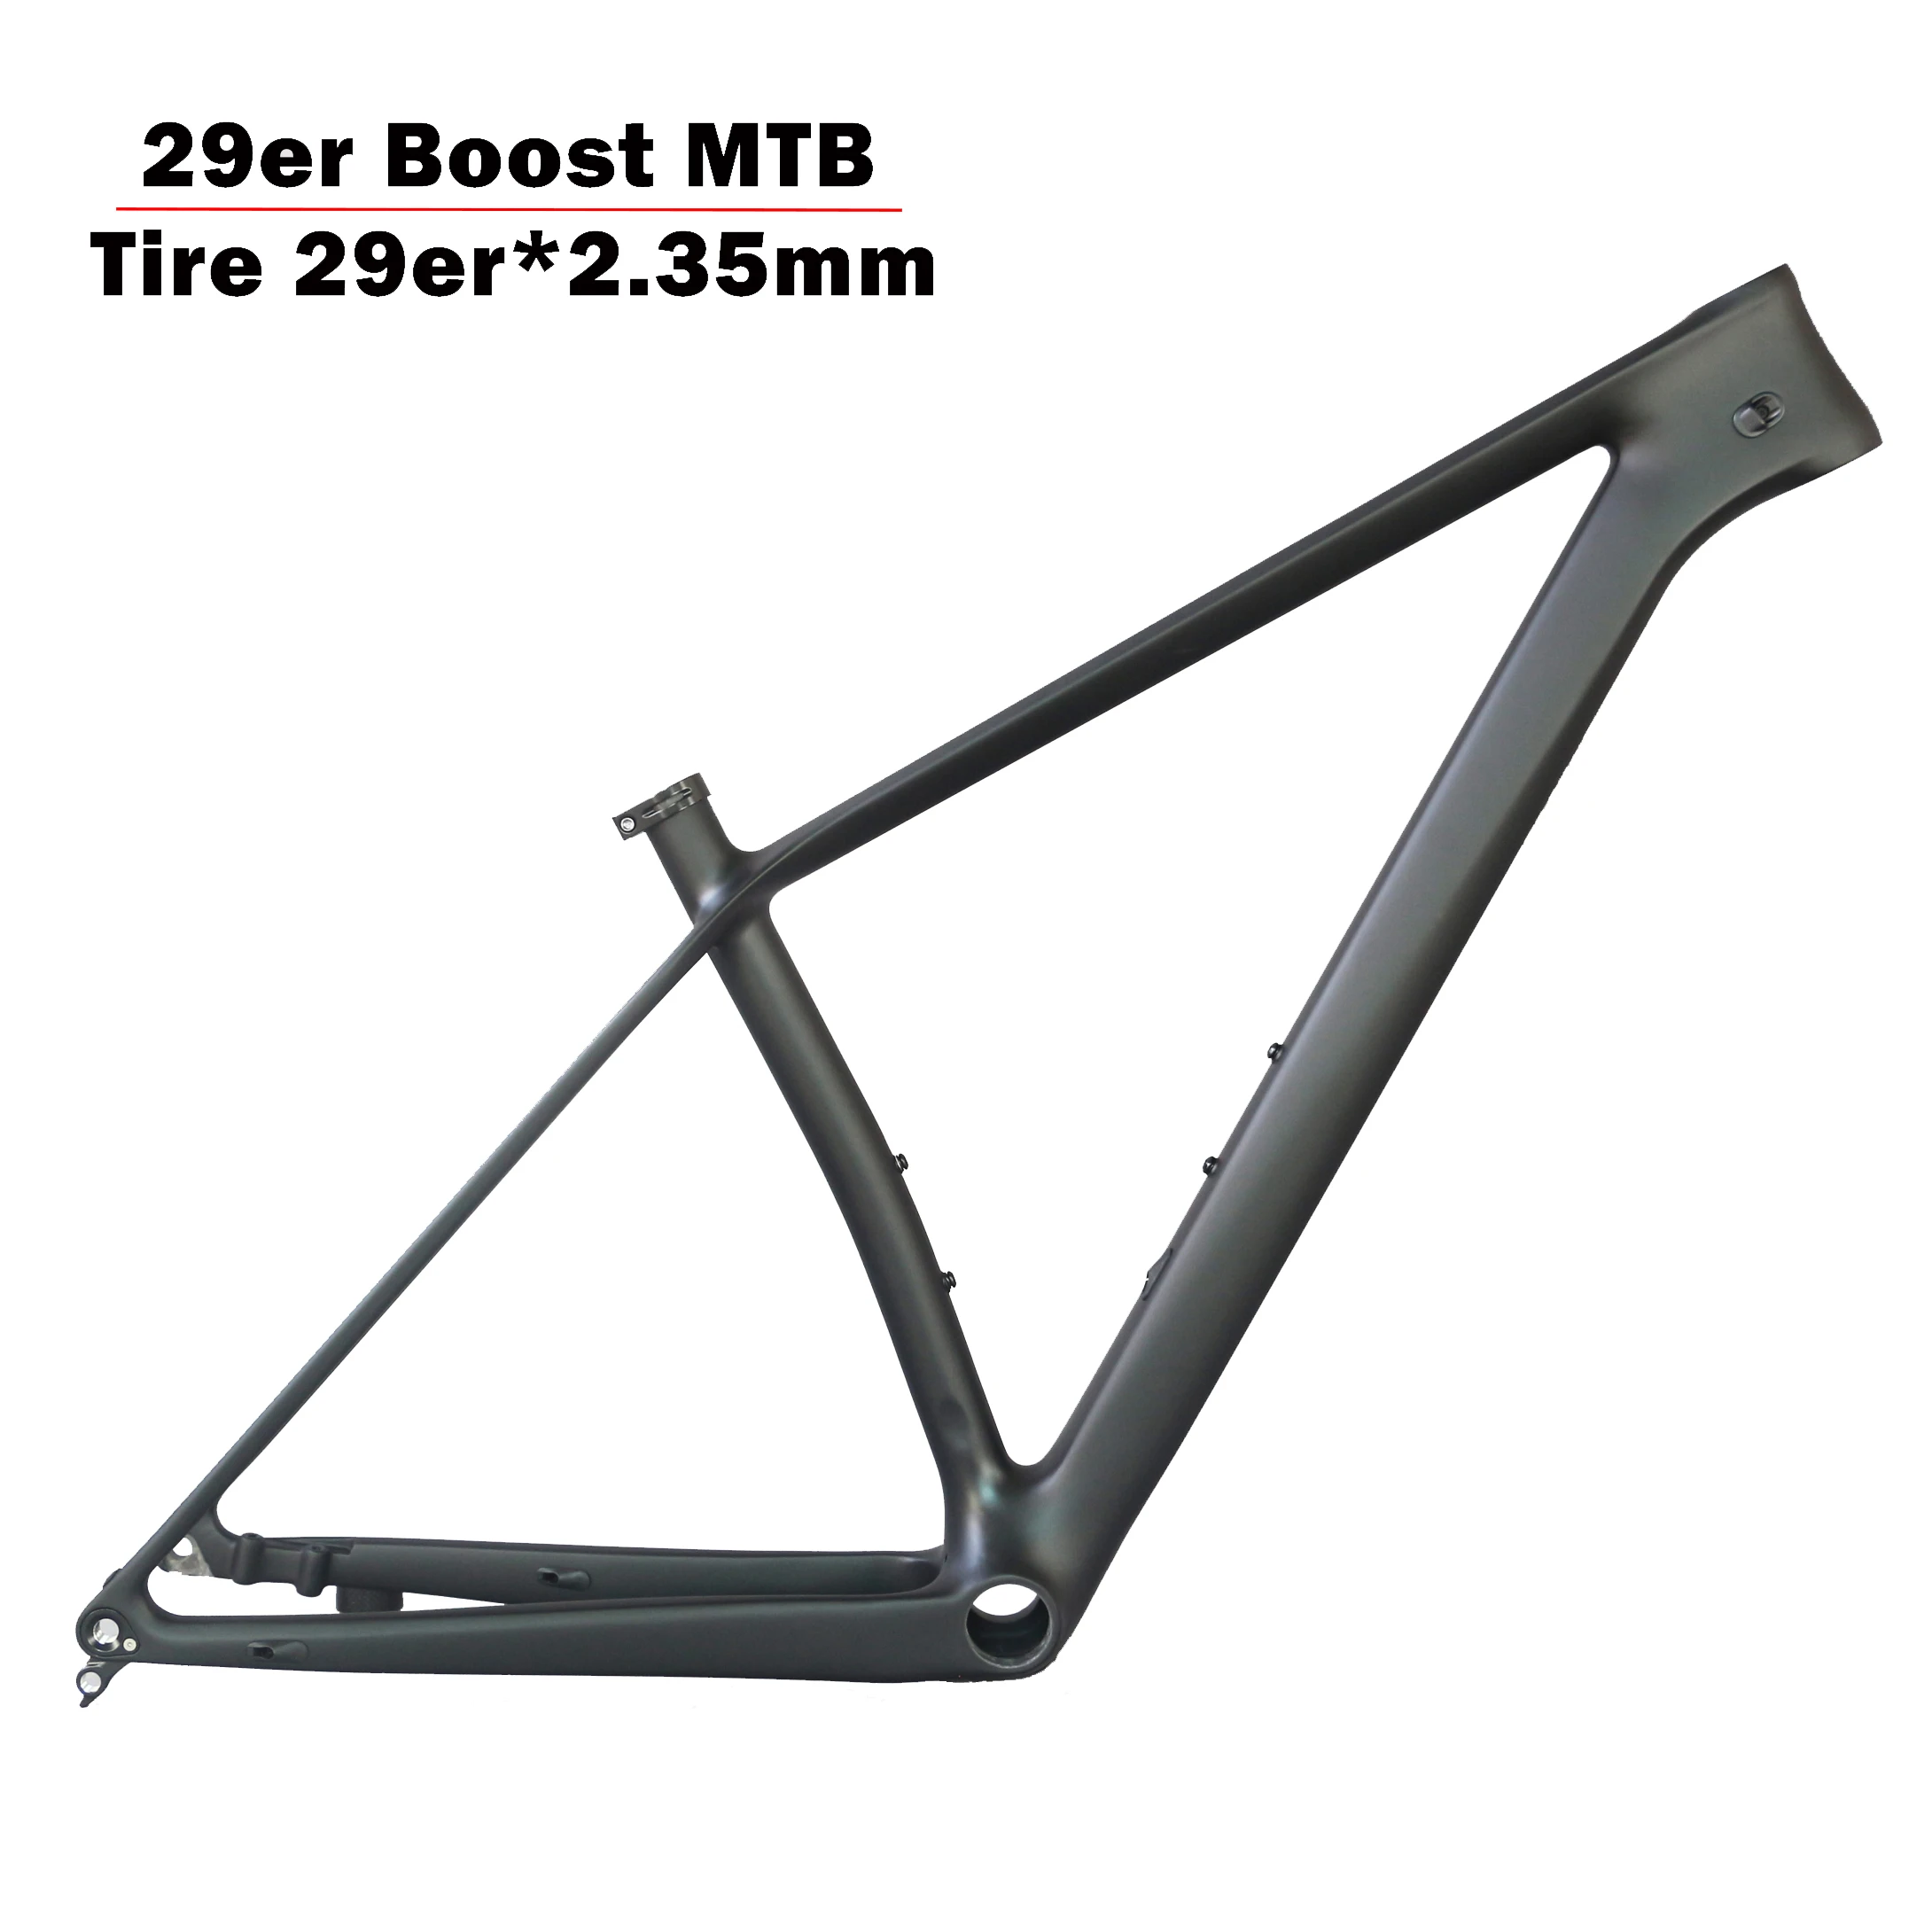 Супер светильник FM199 карбоновая рама для горного велосипеда 29er Boost 29er plus BB92 с шиной 29er* 2,35